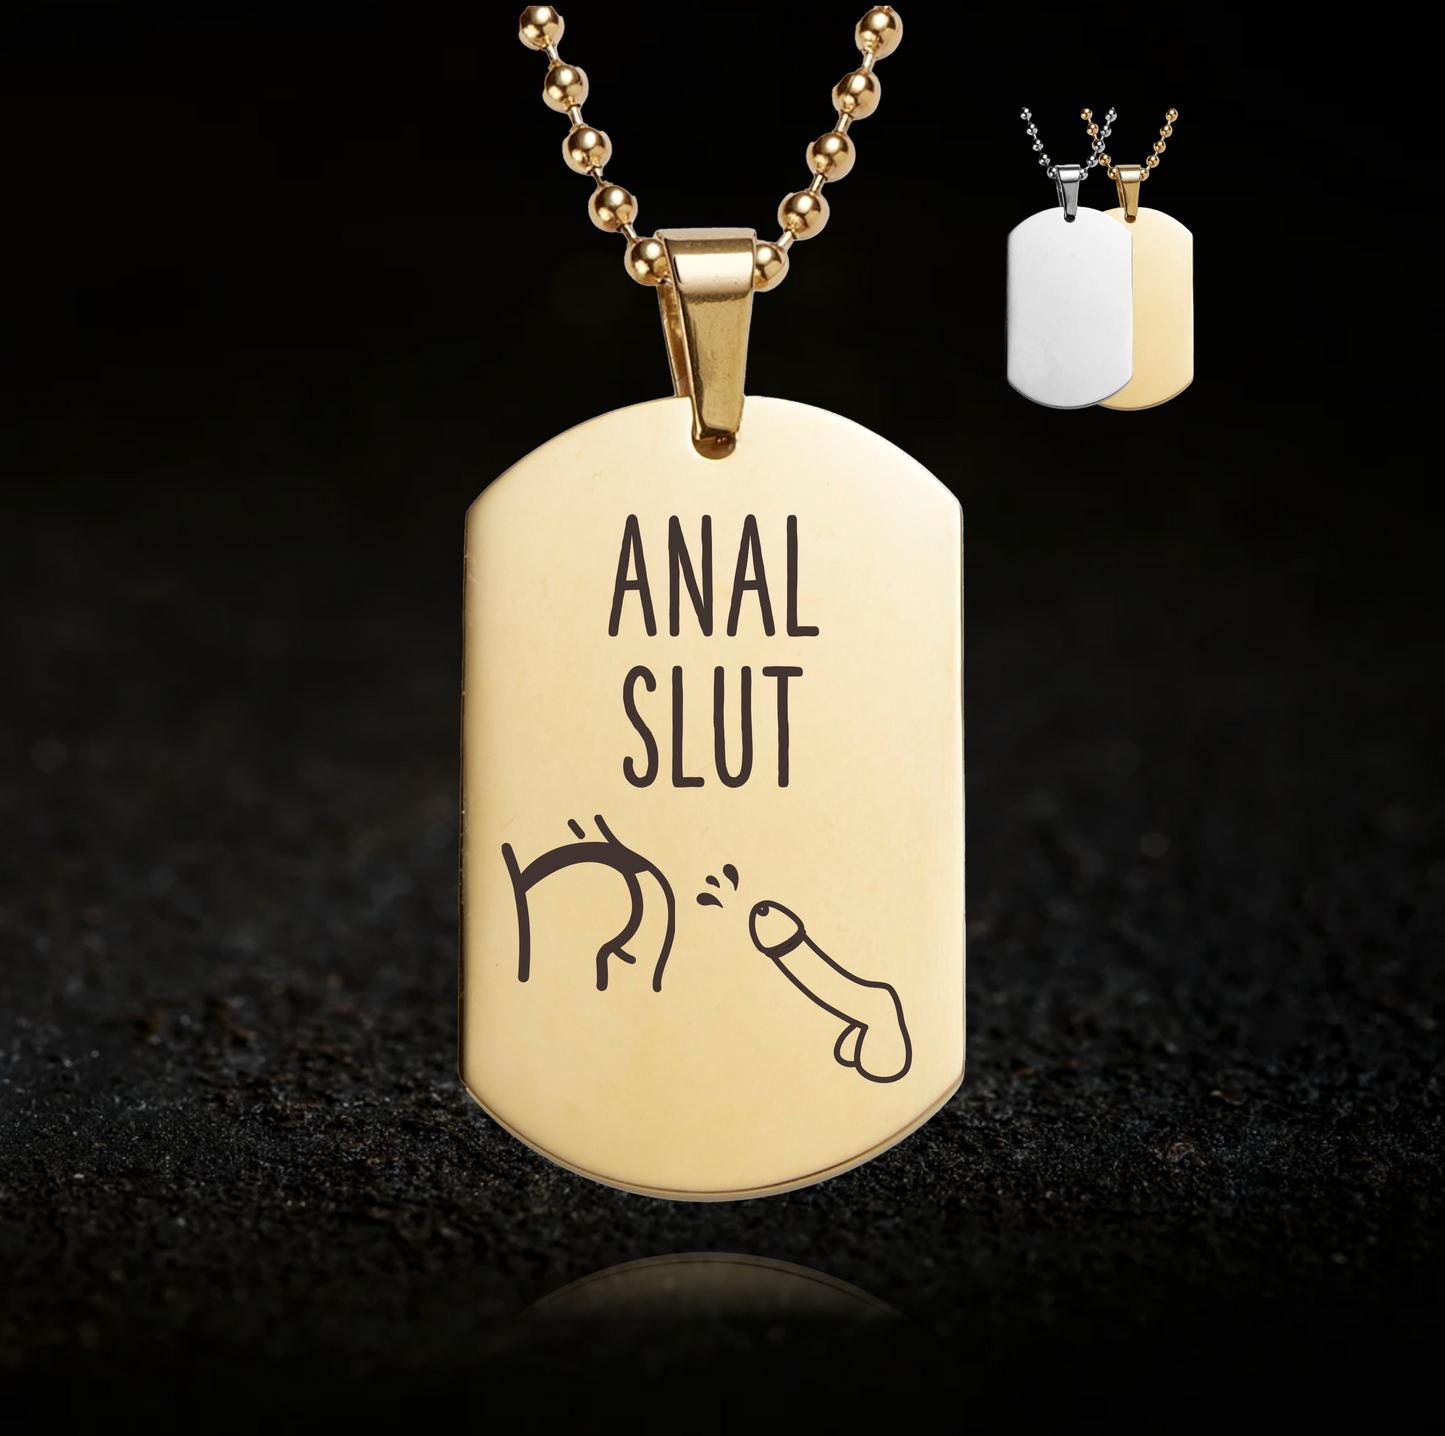 Anal Slut Jewellery